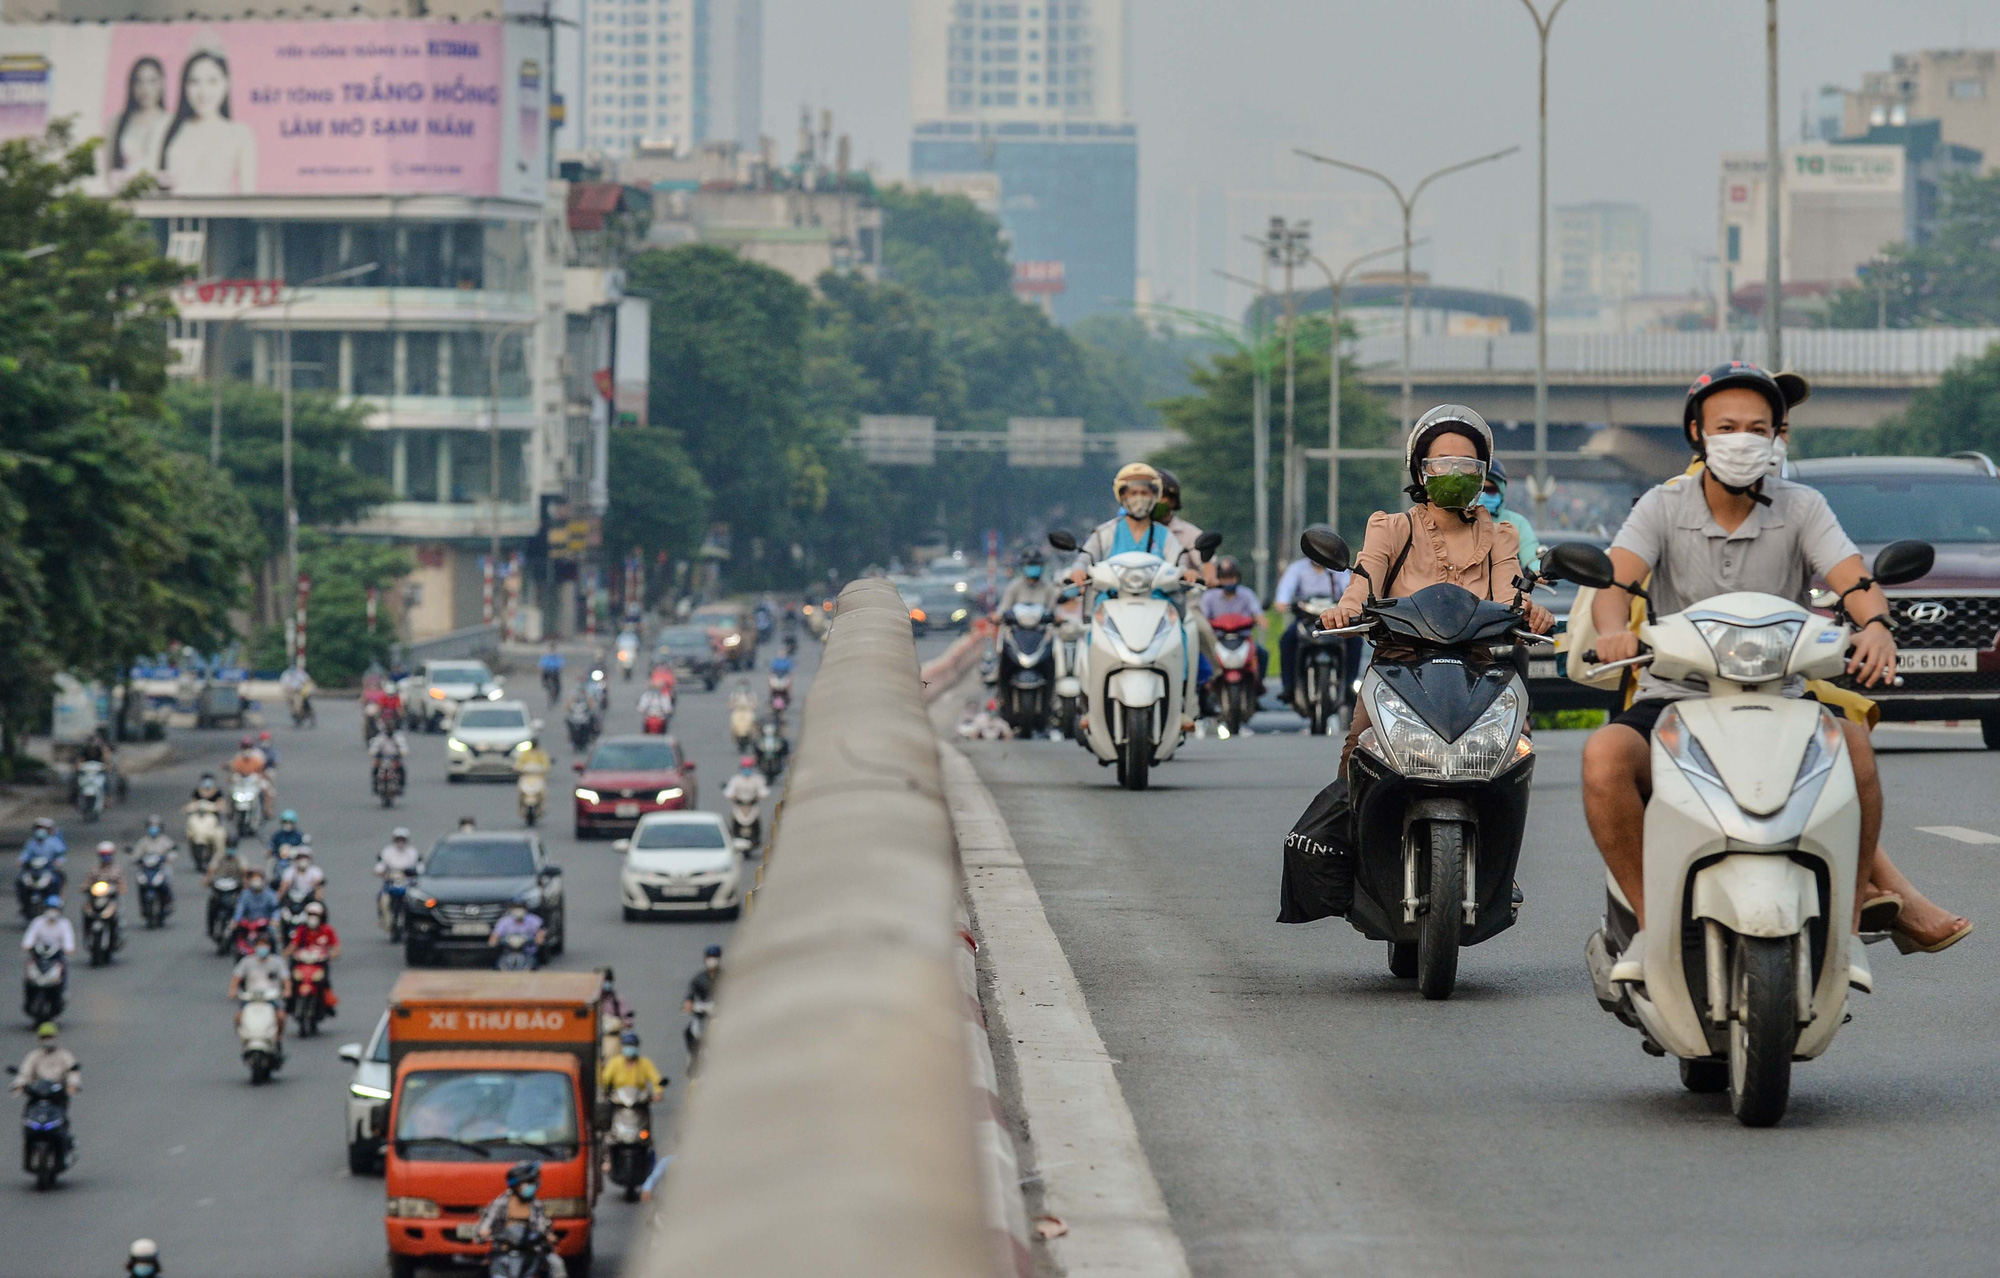 Thủ đô Hà Nội với những con đường phố truyền thống, cổ kính và những lối đi uốn lượn, tạo ra những phong cảnh đẹp mê hồn. Những bức ảnh chụp đường phố Hà Nội sẽ đưa bạn vào một chuyến phiêu lưu đầy thú vị và khám phá những bí mật của một phố phường đẹp như mơ.